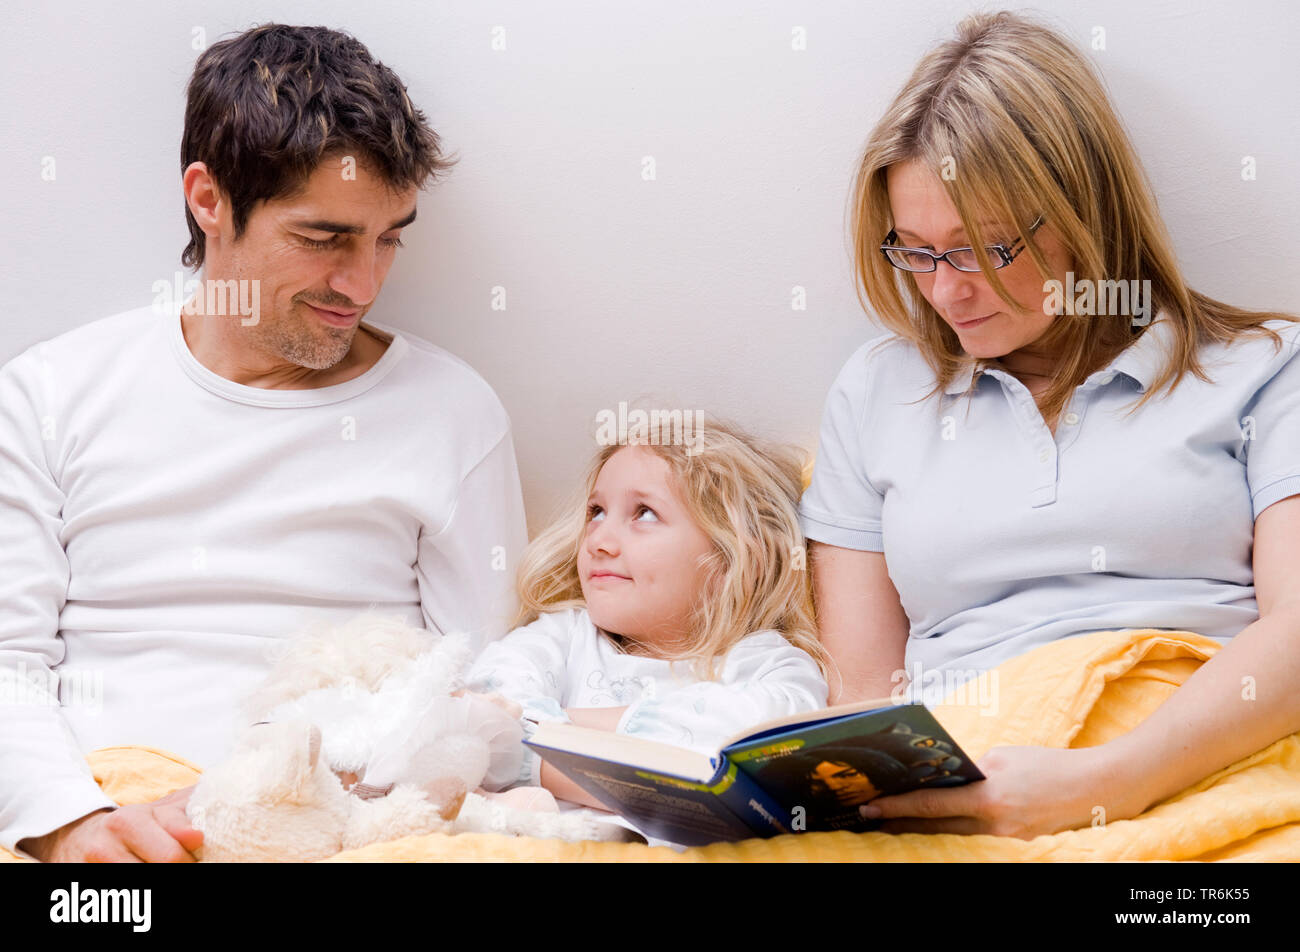 Eltern und Tochter zusammen in einem Bett Stockfoto